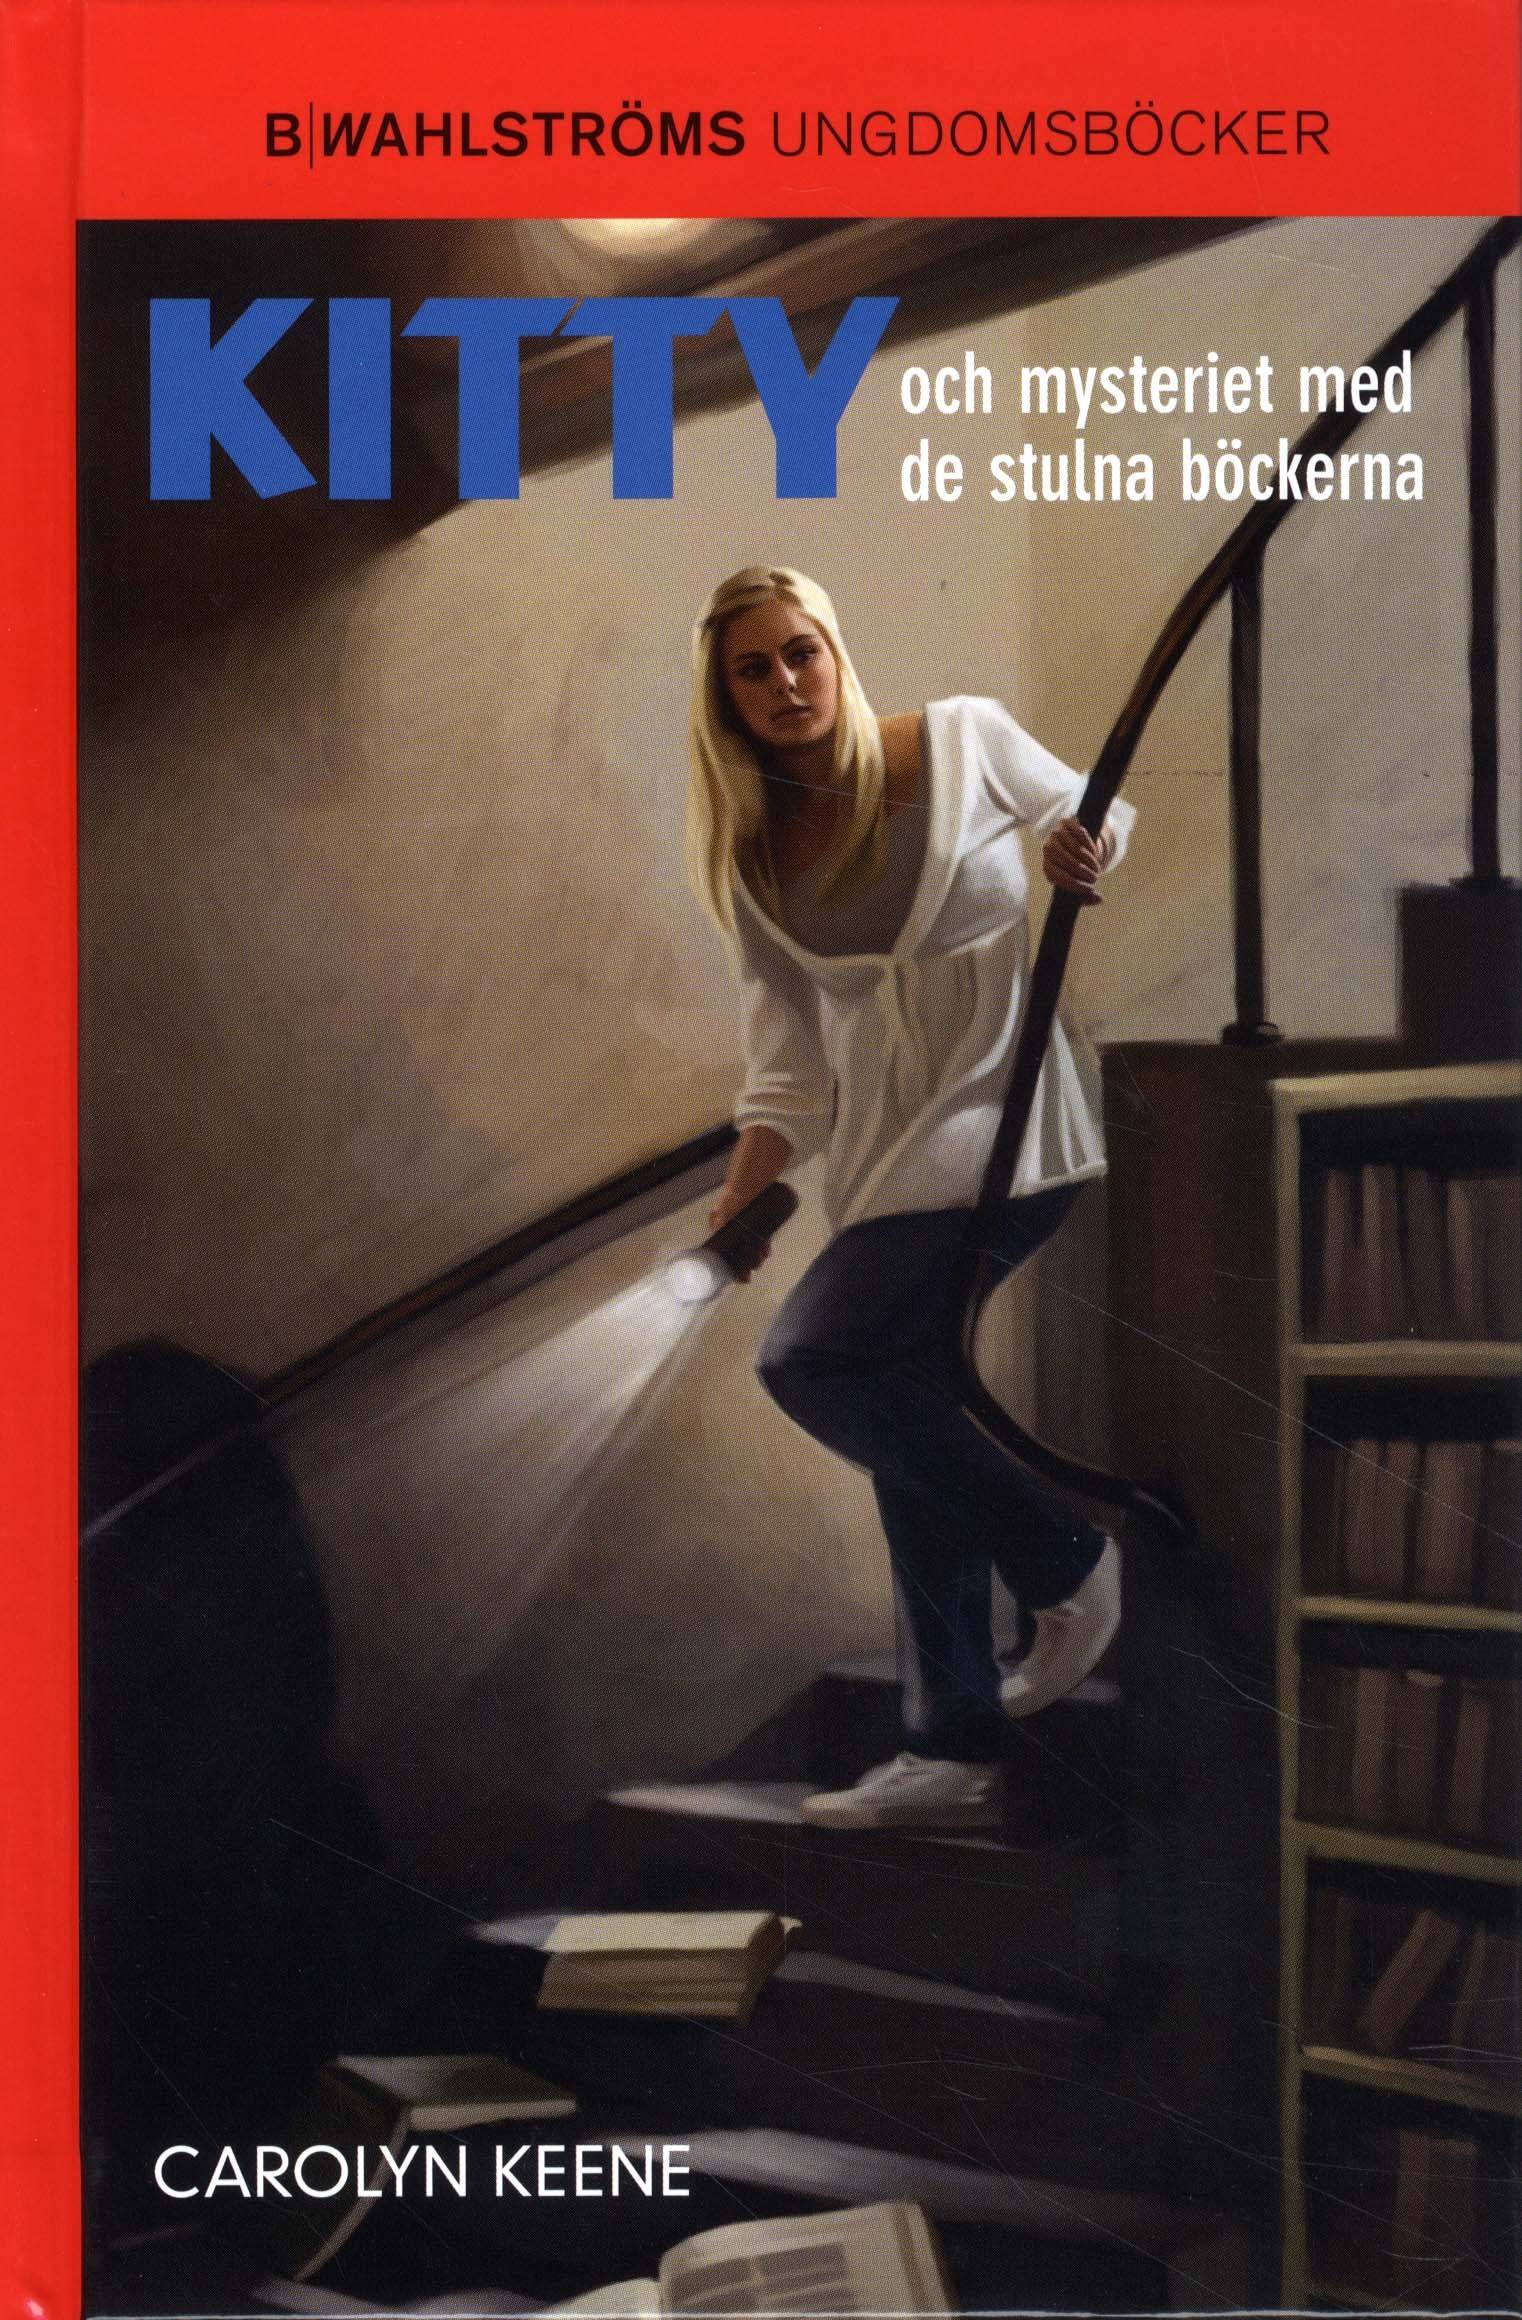 Kitty och mysteriet med de stulna böckerna